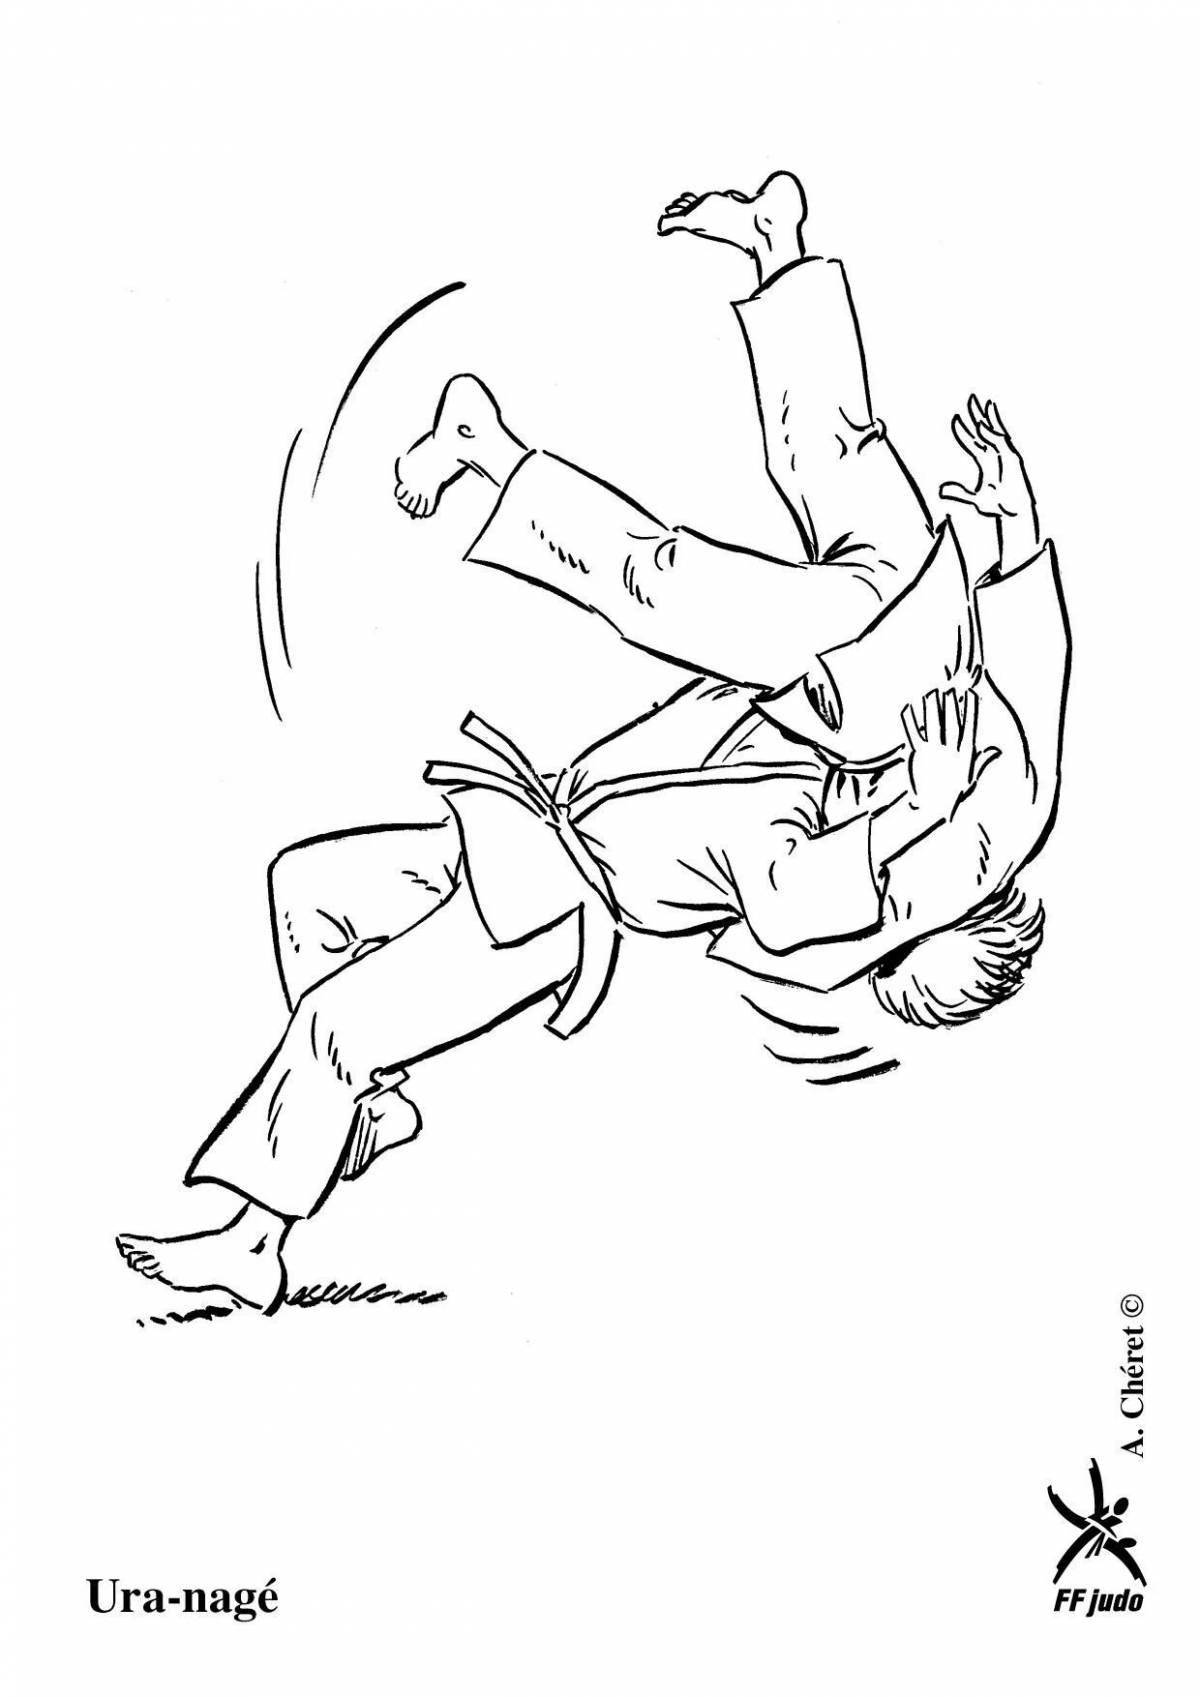 Dynamic Jitsu coloring page